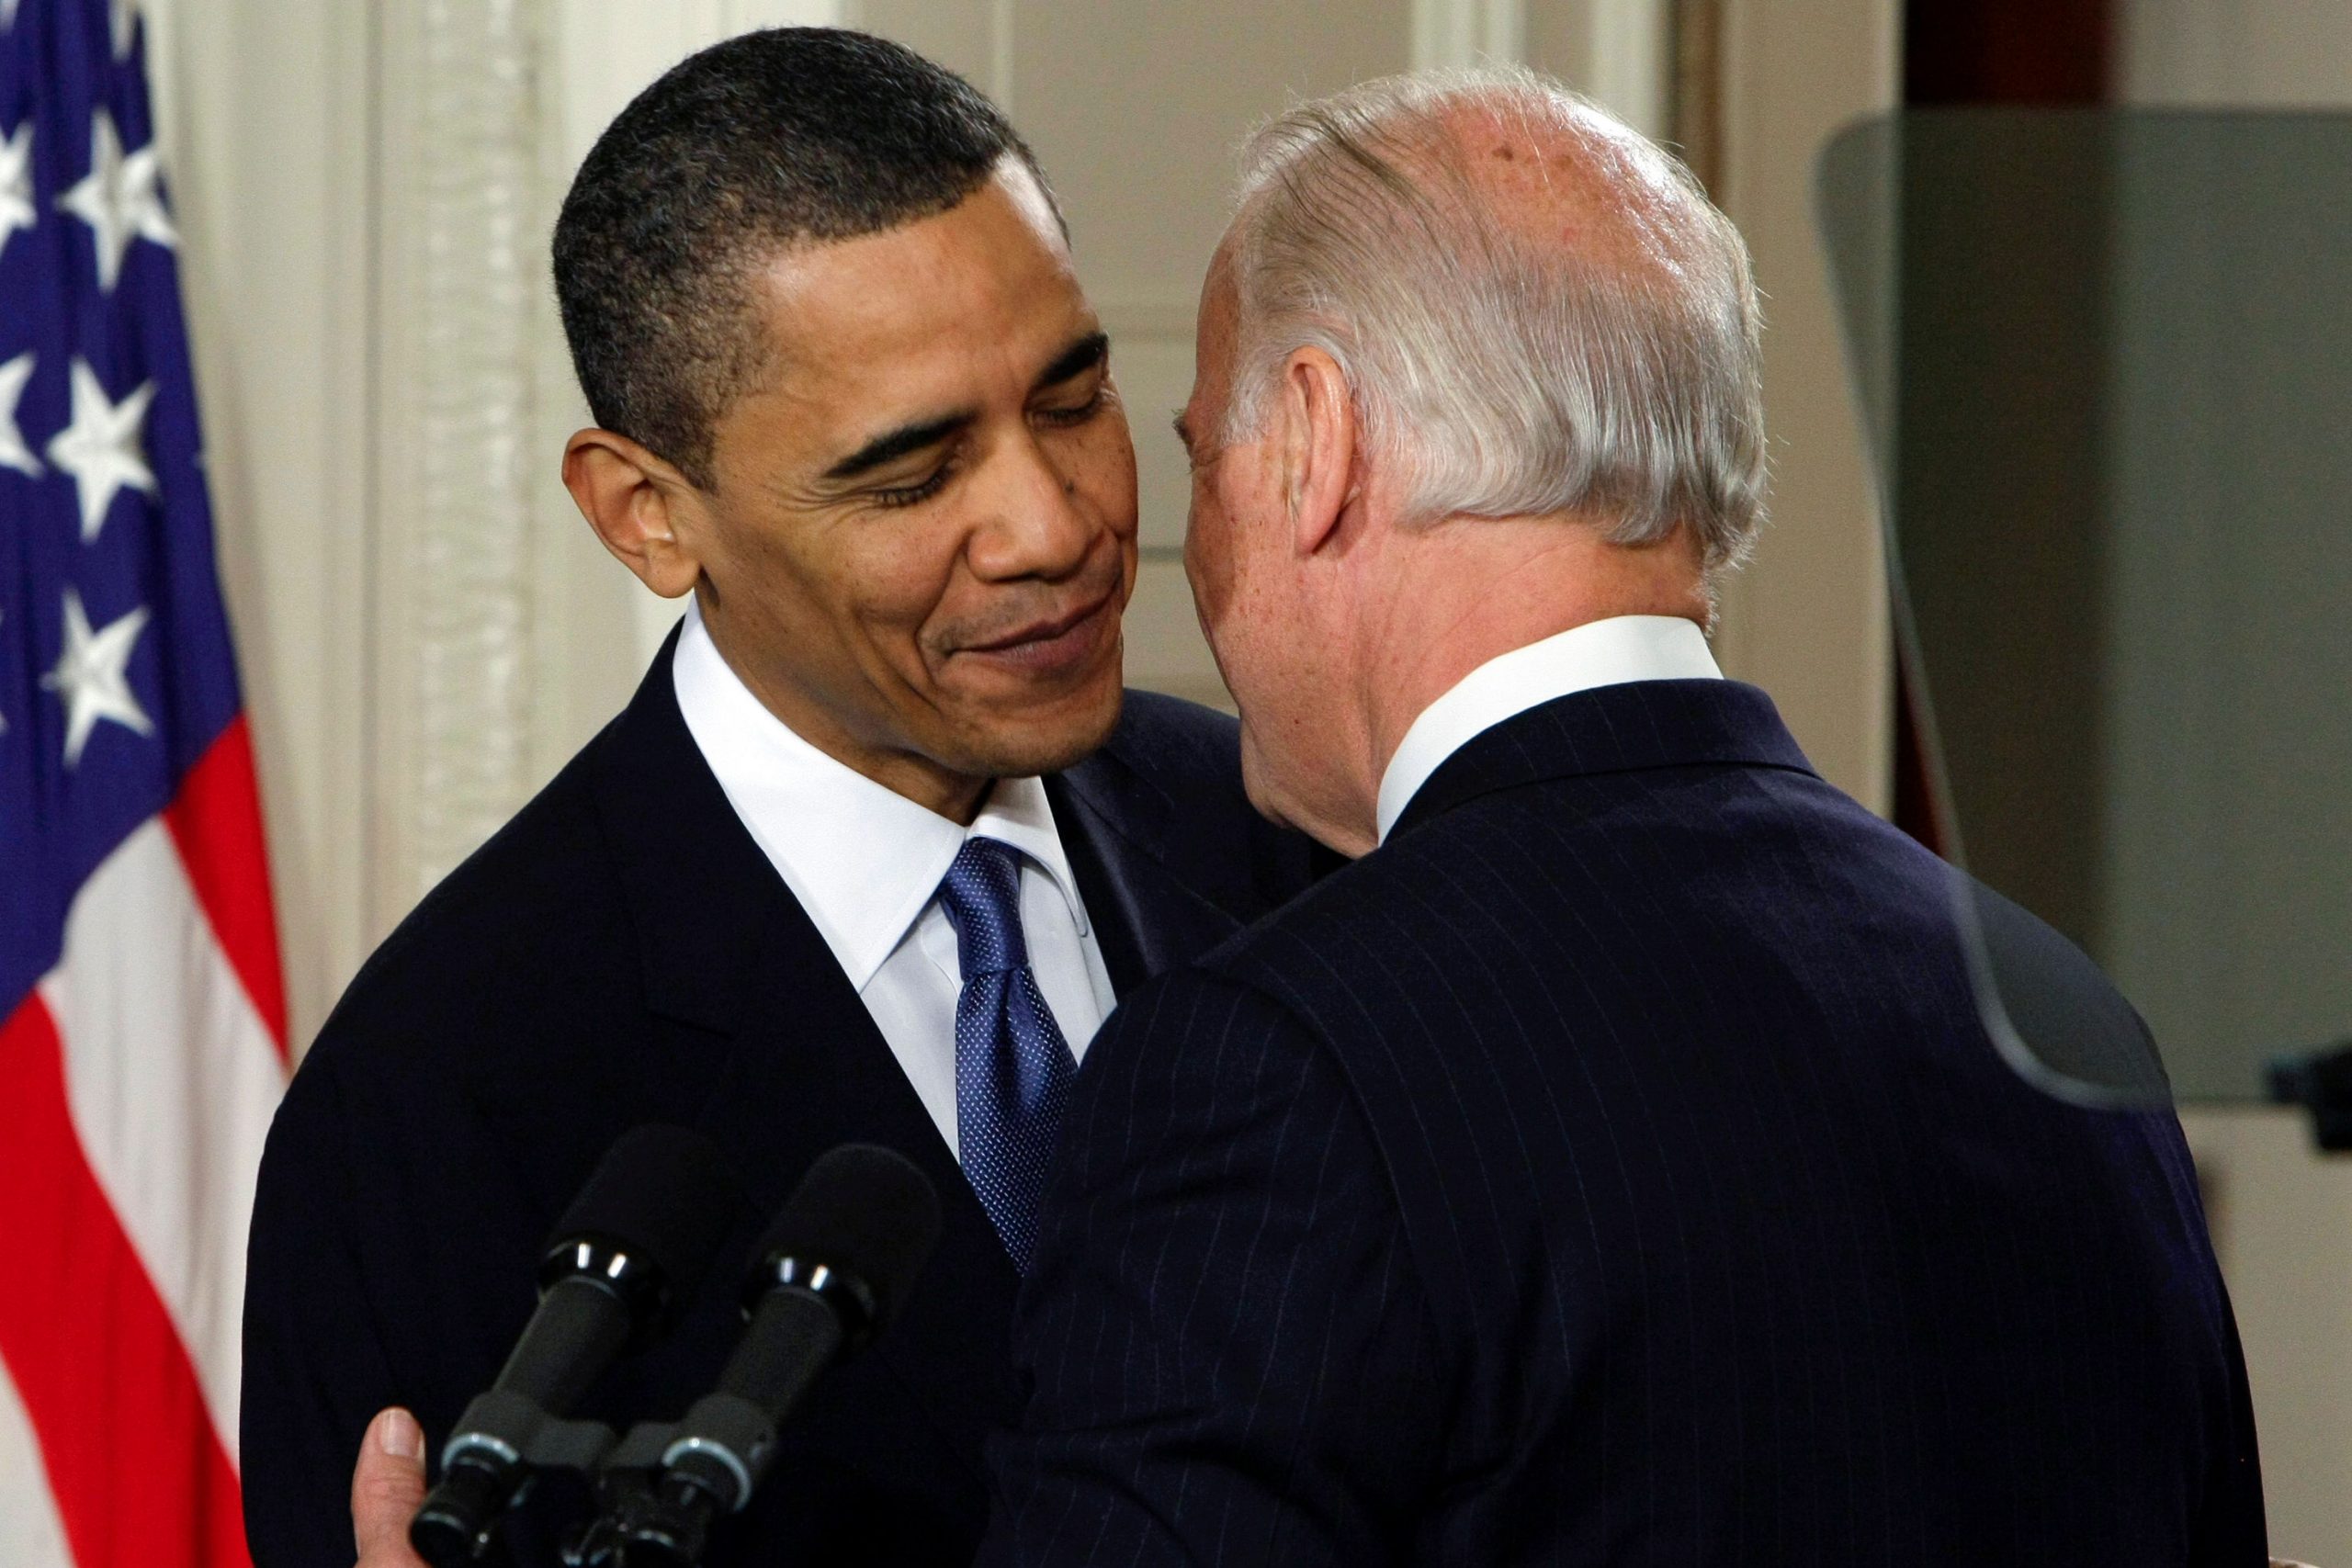 Biden-Obama meeting: White House reunion to celebrate health law